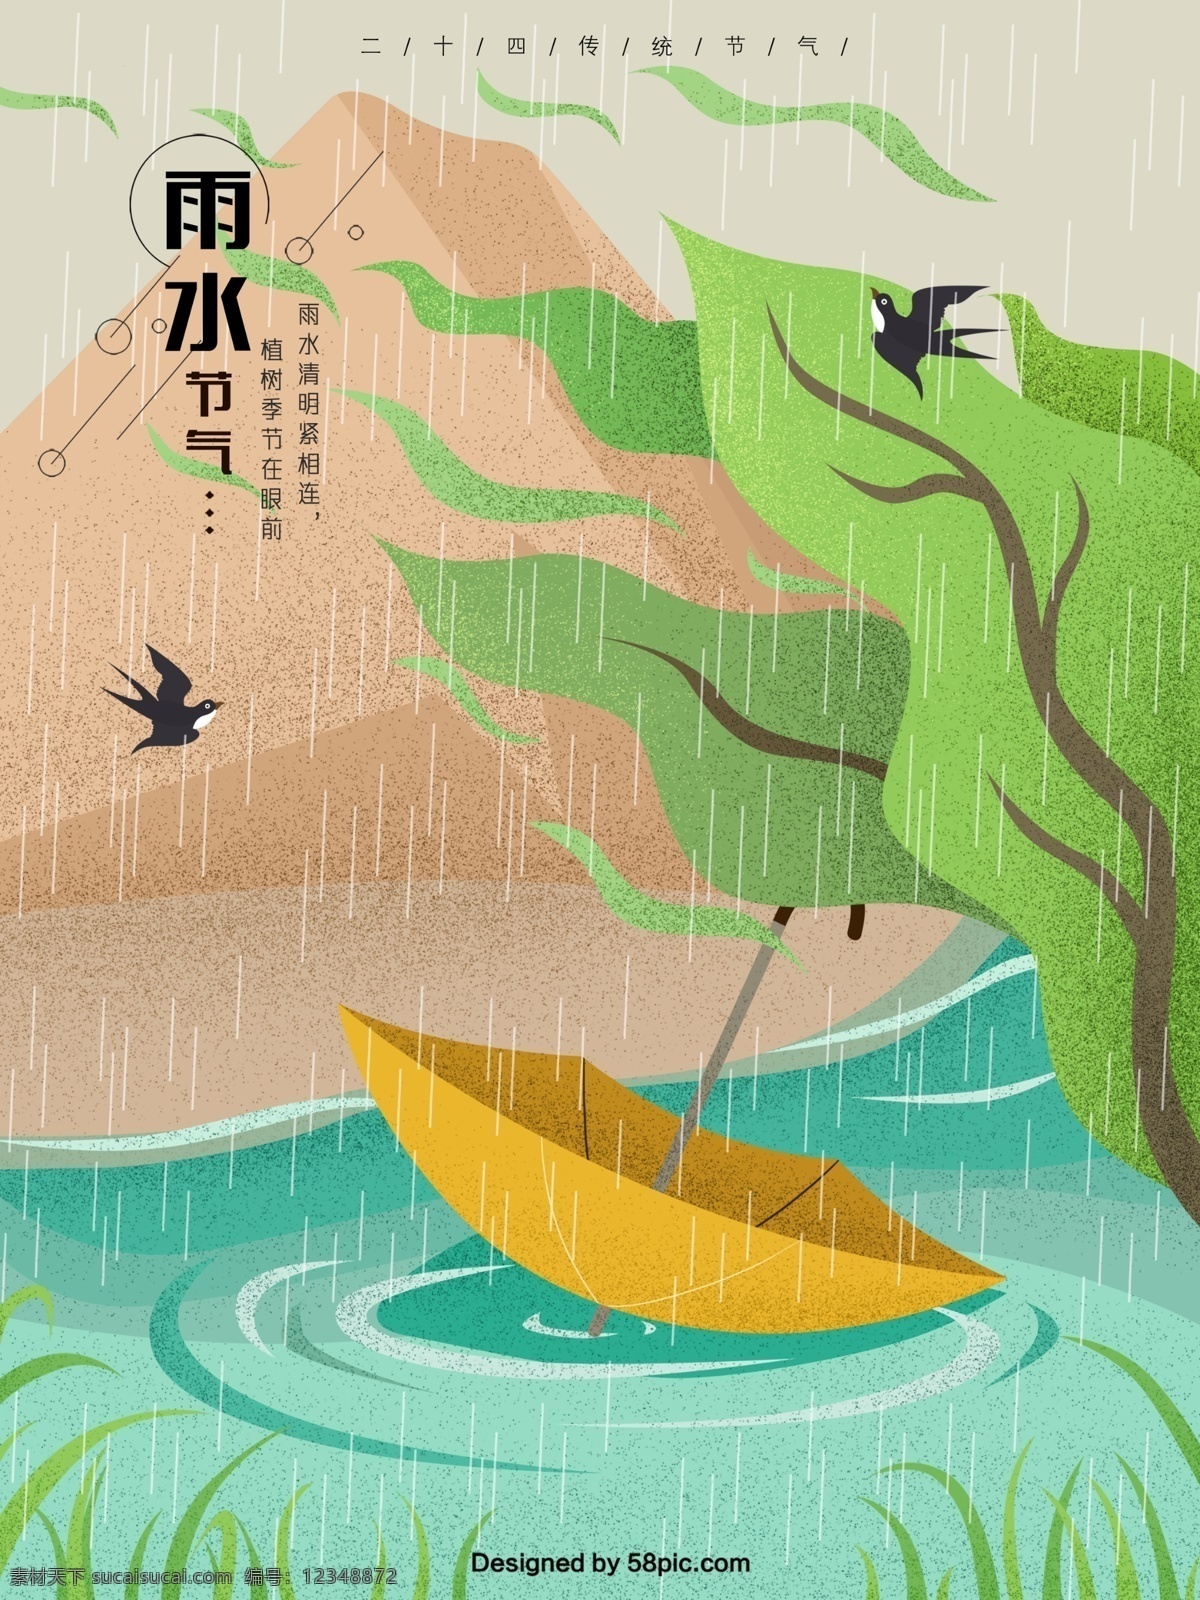 二十四节气 雨水 急湍 溪流 原创 手绘 海报 24节气 插画 春季海报 春天 春天来了 春天你好 简约 节气 燕子 植物